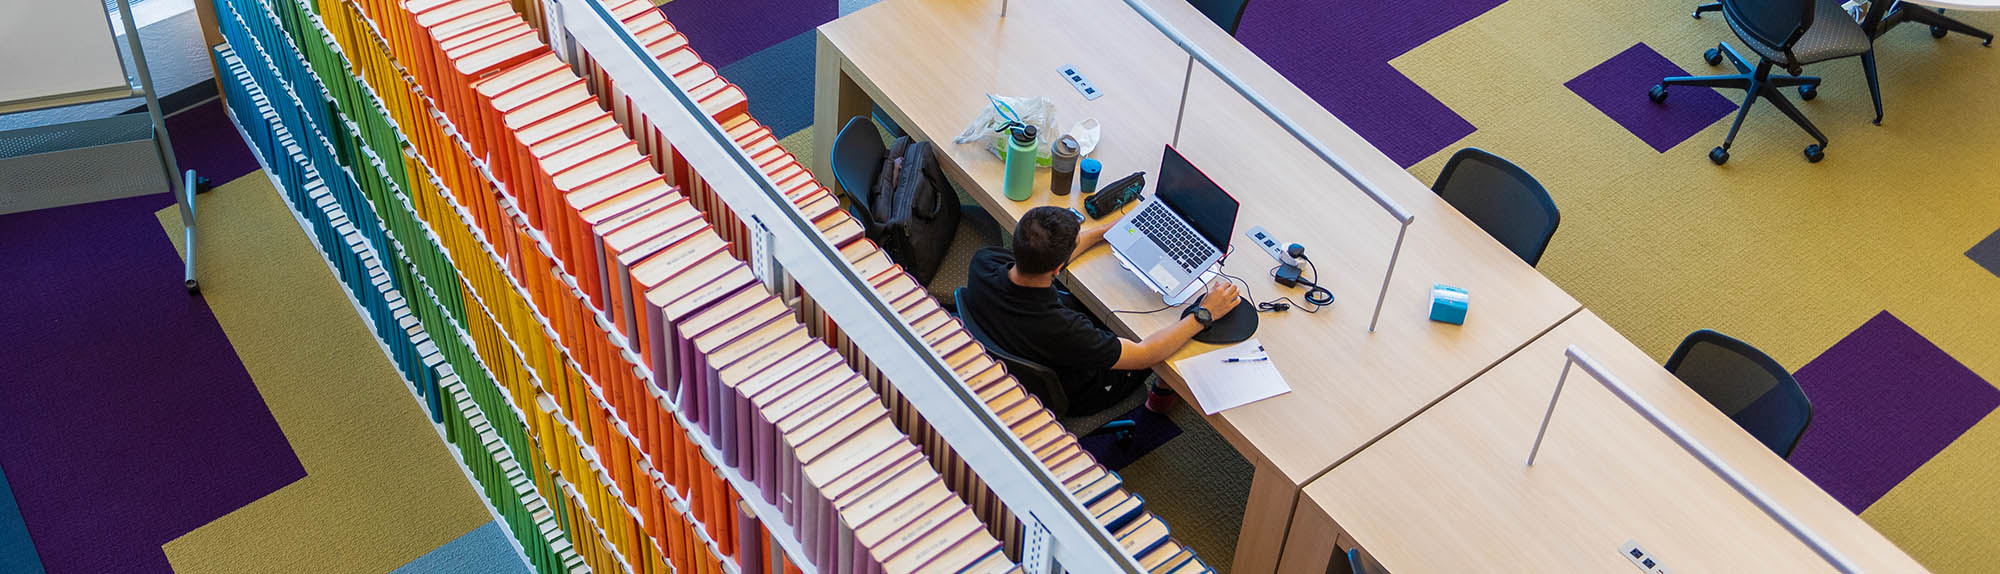 一个人在 HSC 图书馆学习的鸟瞰图，身后是五颜六色的书籍